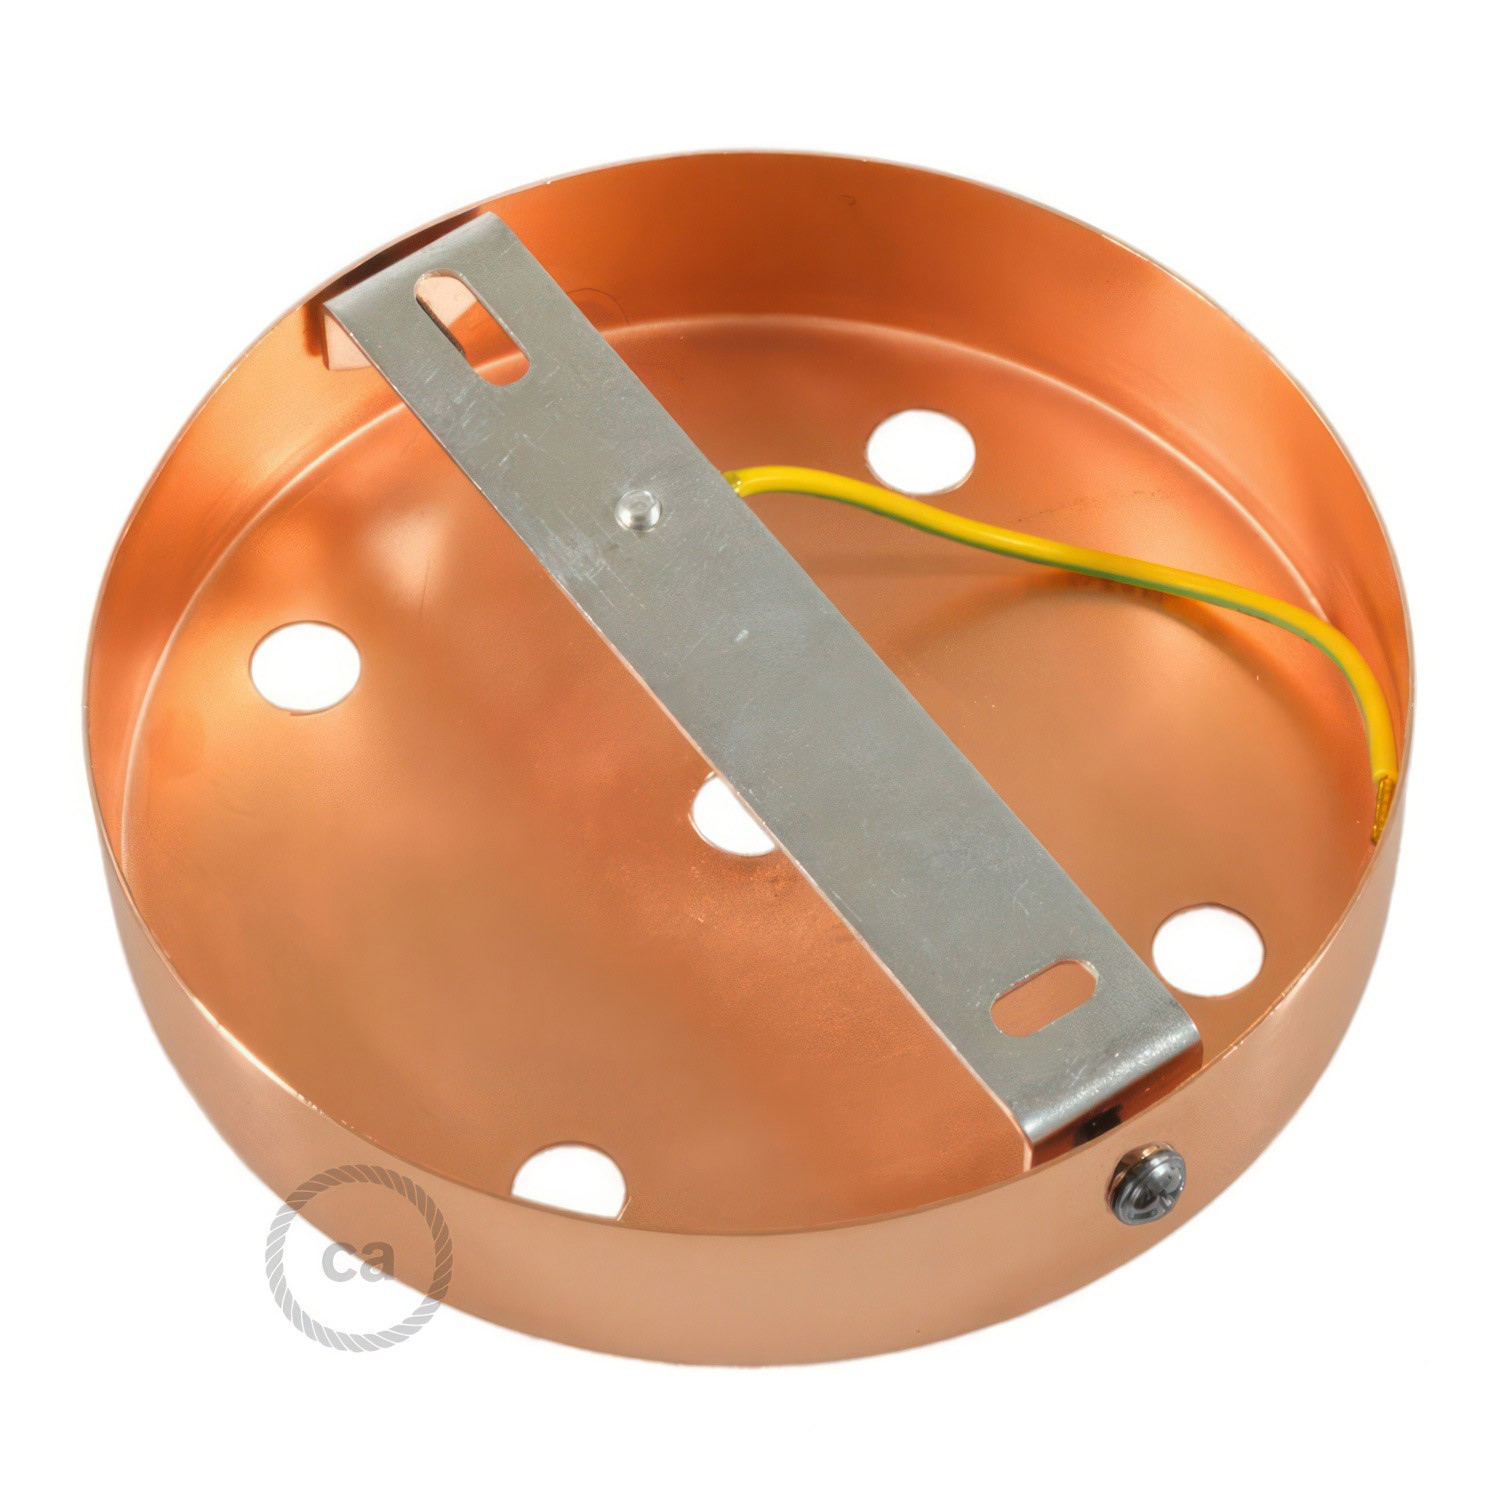 Zylindrischer 5-Loch-Lampenbaldachin Kit aus Metall